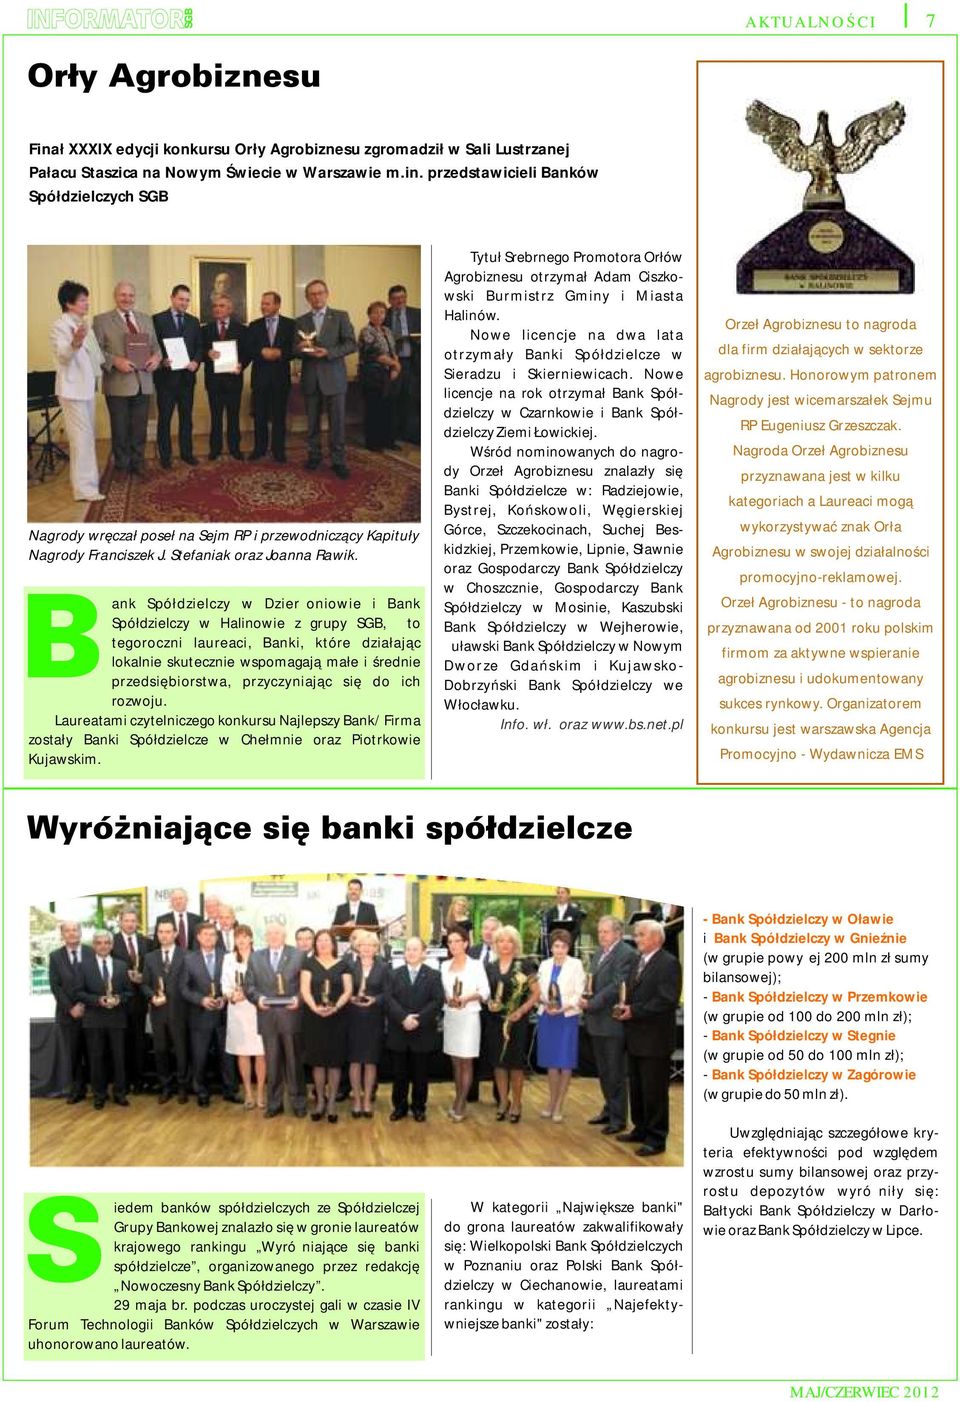 ank Spółdzielczy w Dzierżoniowie i Bank Spółdzielczy w Halinowie z grupy SGB, to tegoroczni laureaci, Banki, które działając lokalnie skutecznie wspomagają małe i średnie przedsiębiorstwa,